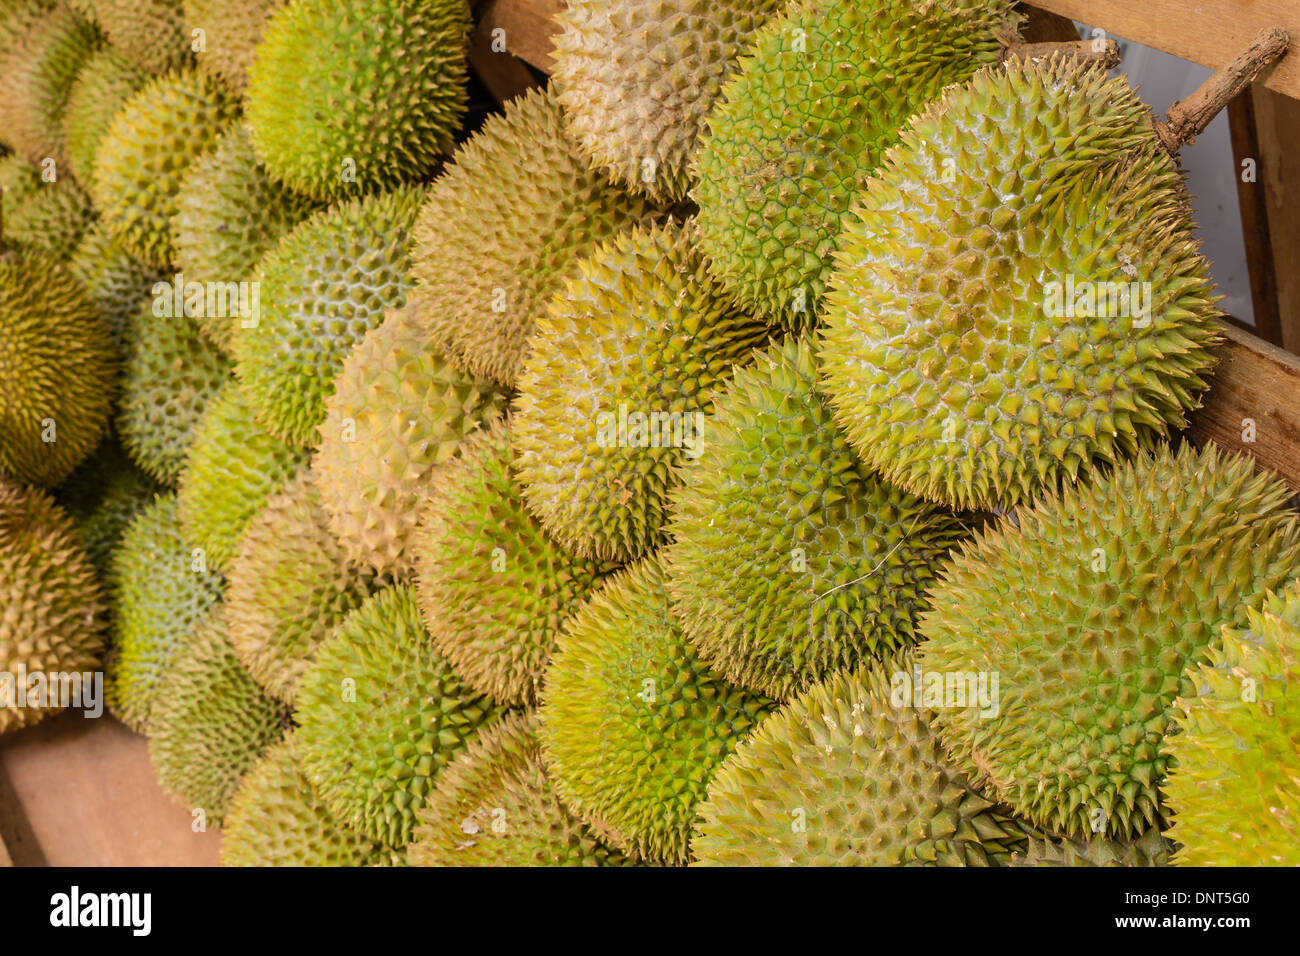 Large Amounts of Durian Fruit Stock Photo